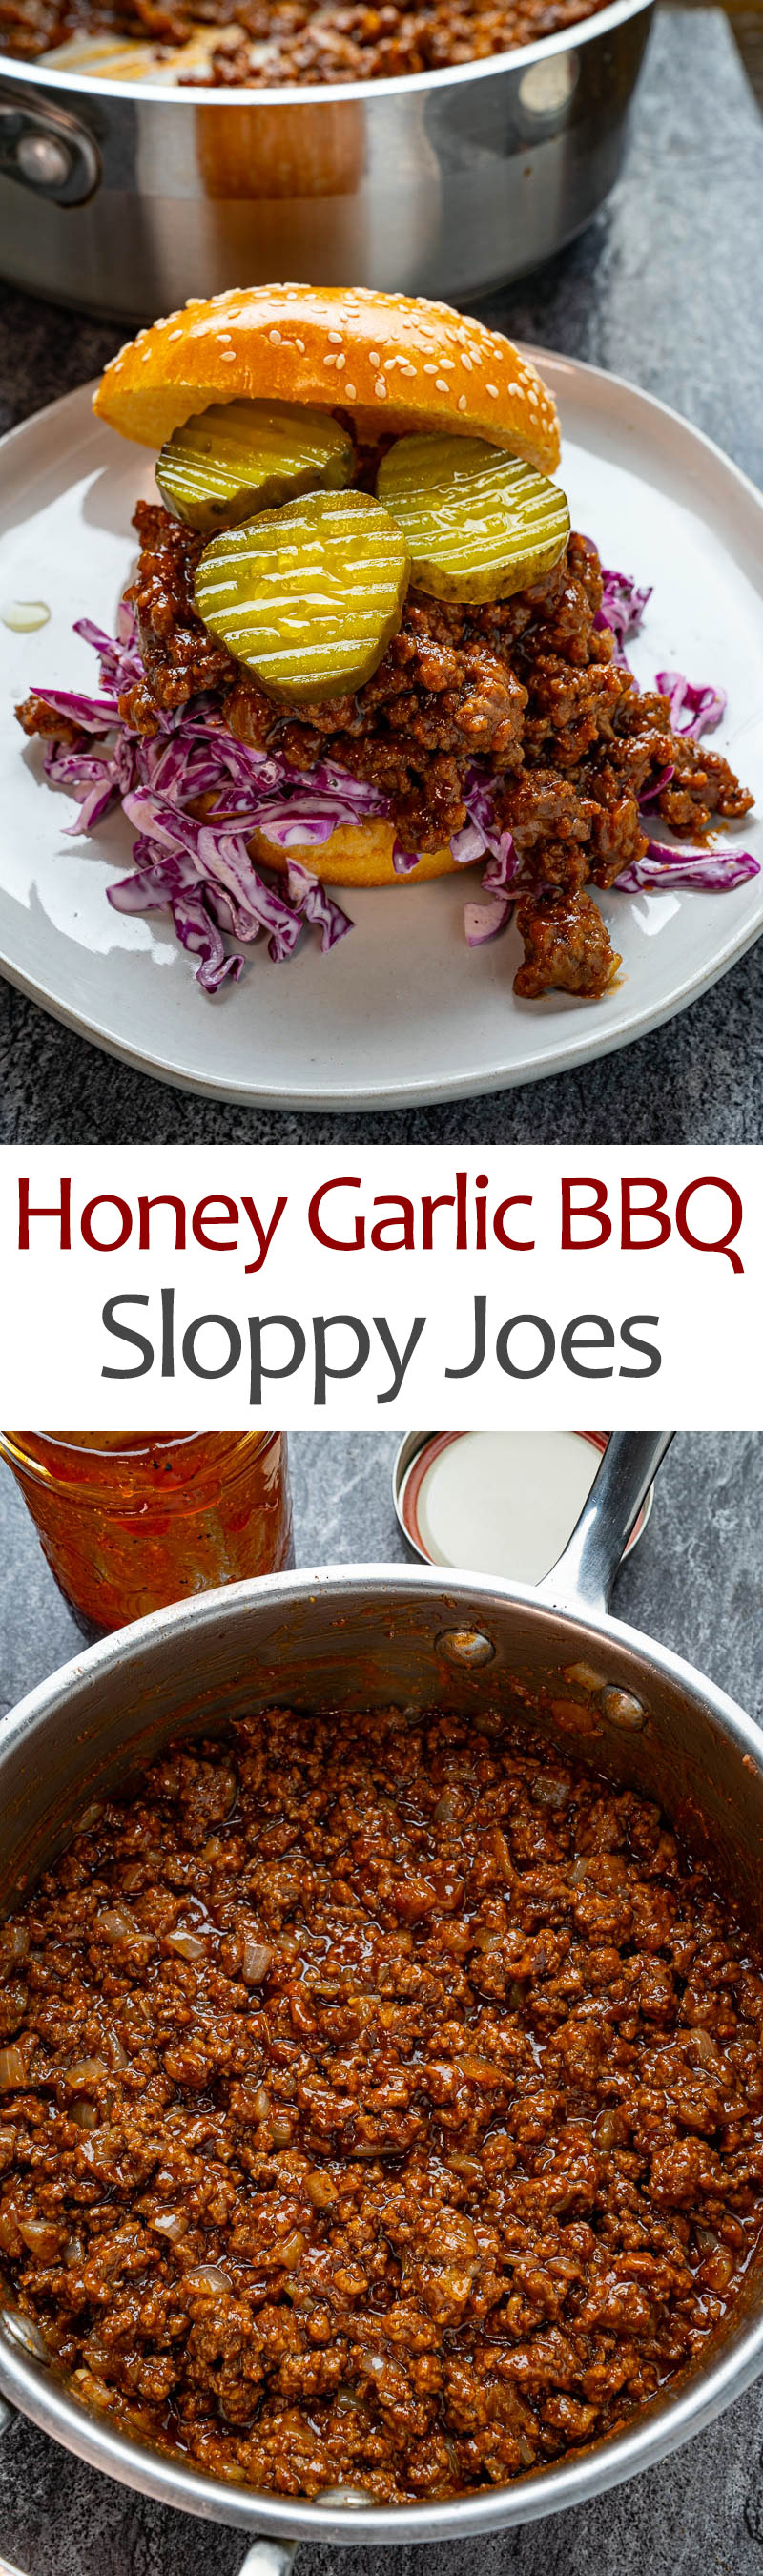 Honey Garlic BBQ Sloppy Joes